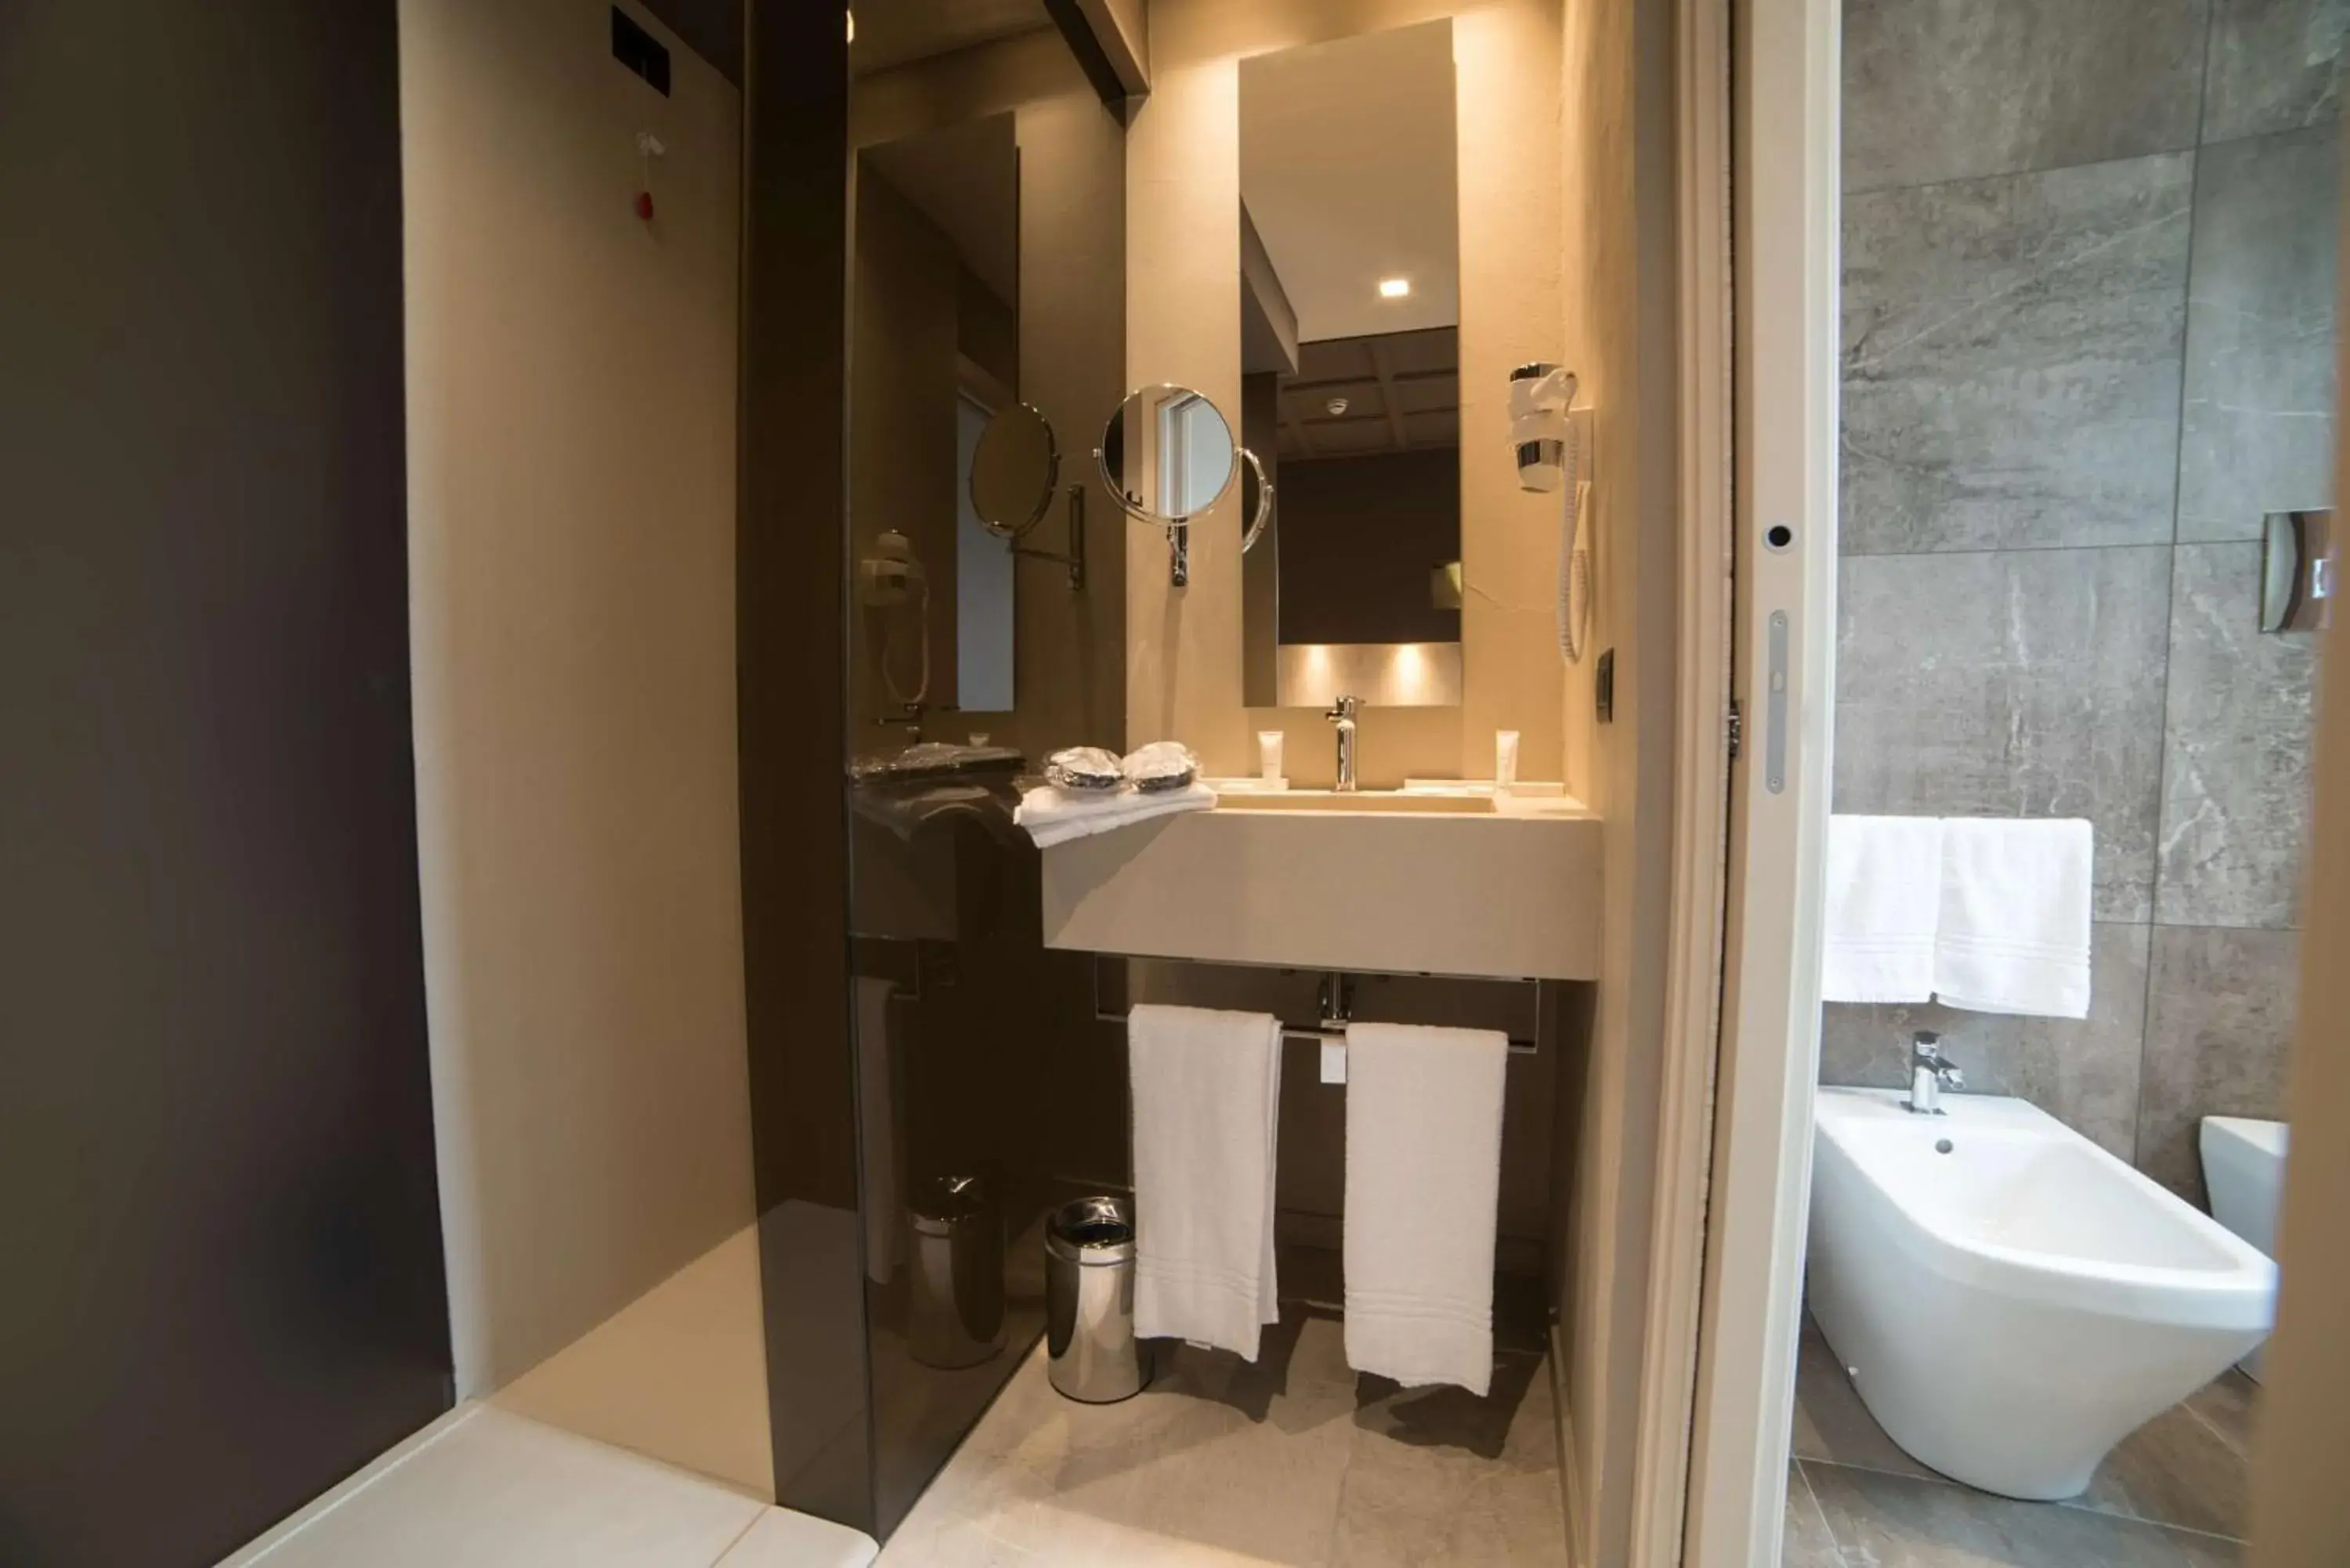 Bedroom, Bathroom in Best Western Plus Hotel Terre di Eolo